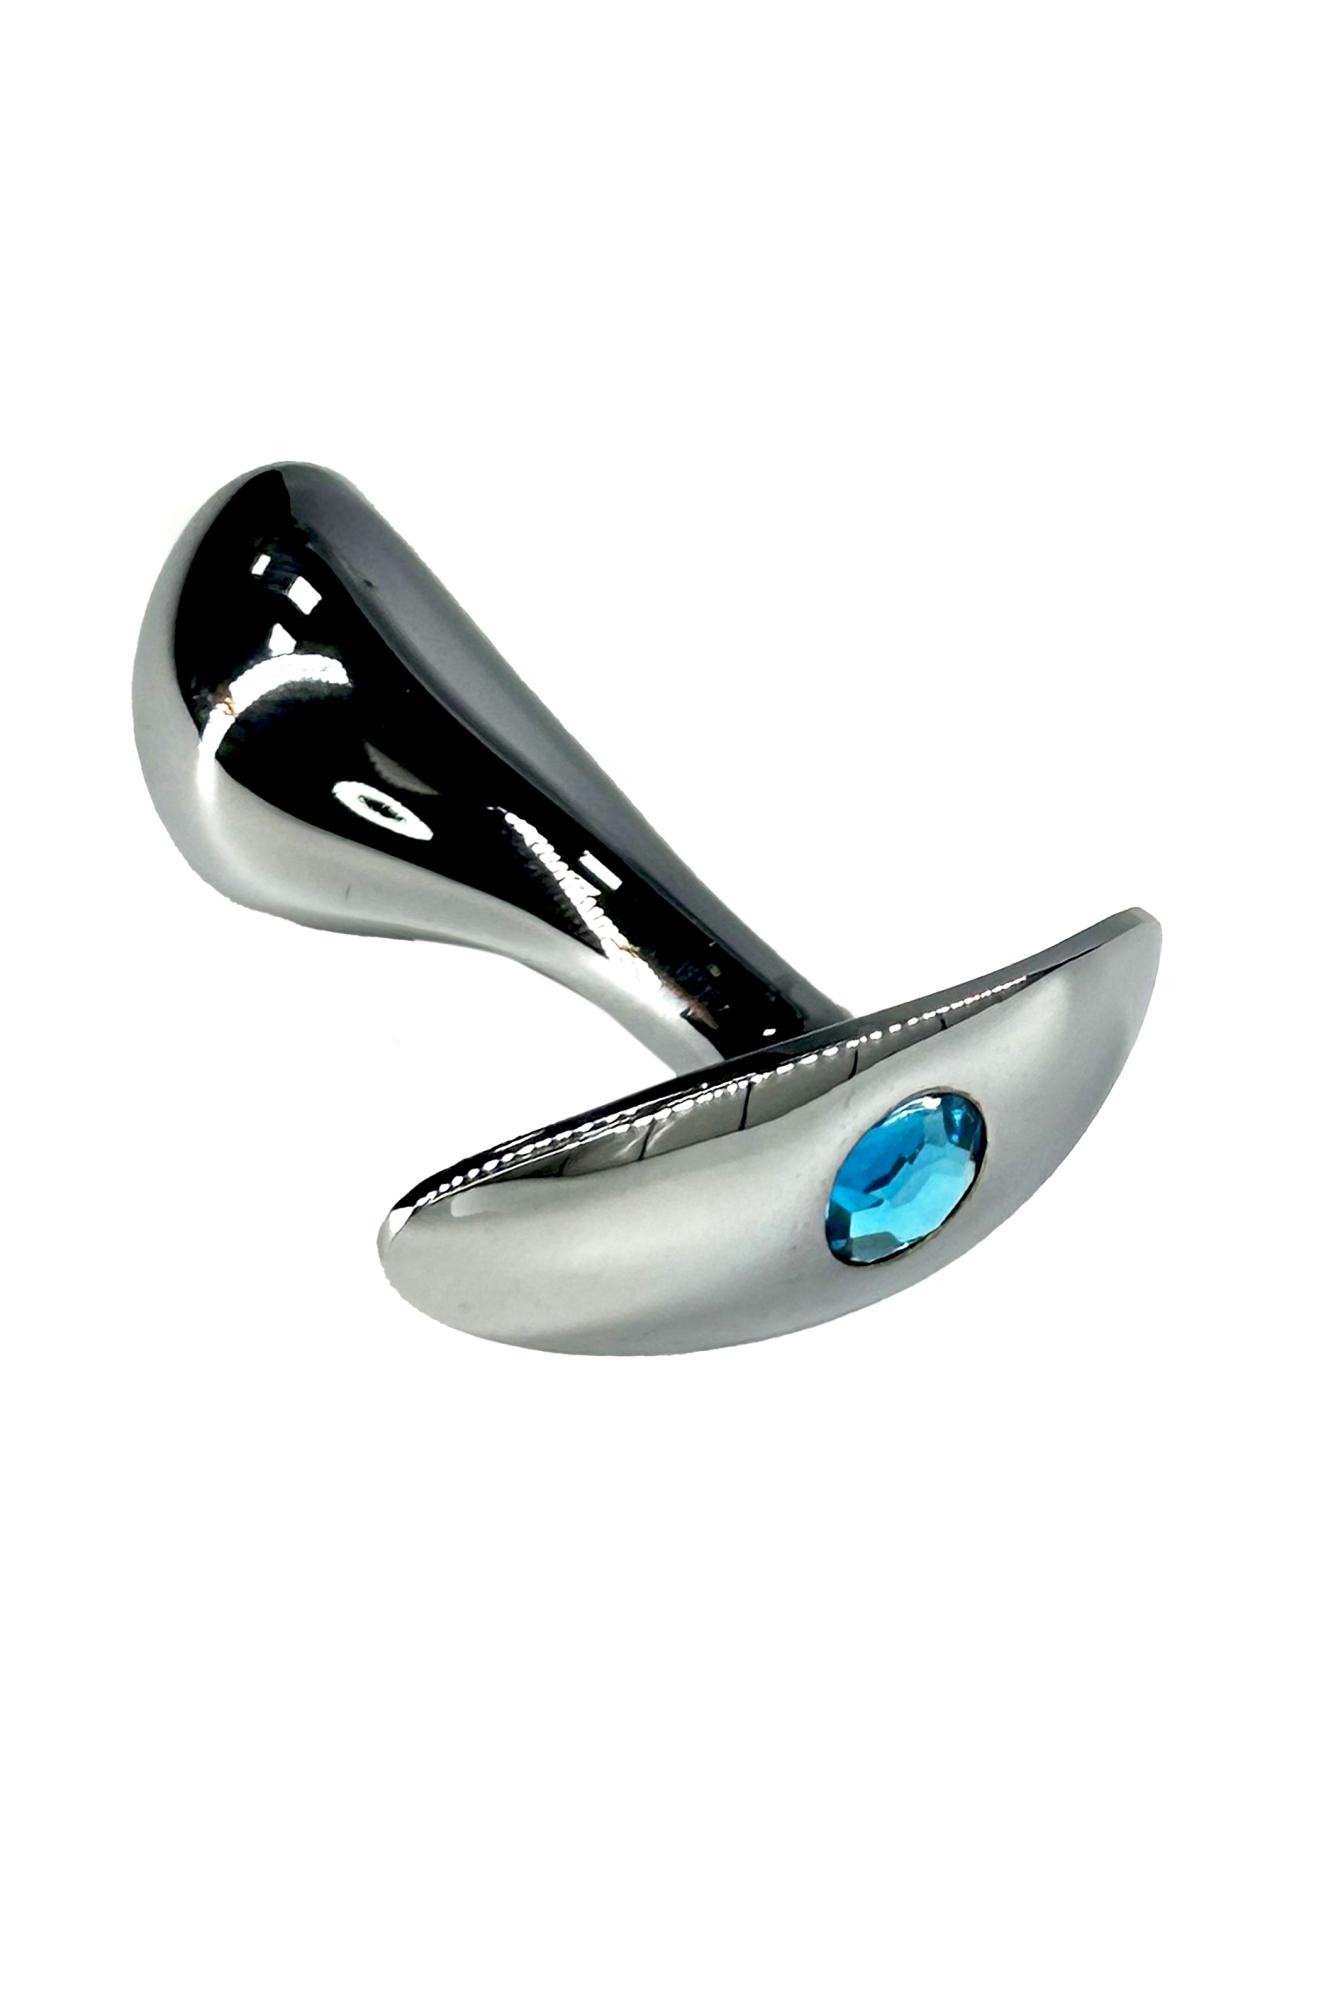 Kanikule - Изогнутая анальная пробка для ношения c голубым кристаллом S, 8 см (серебристый)